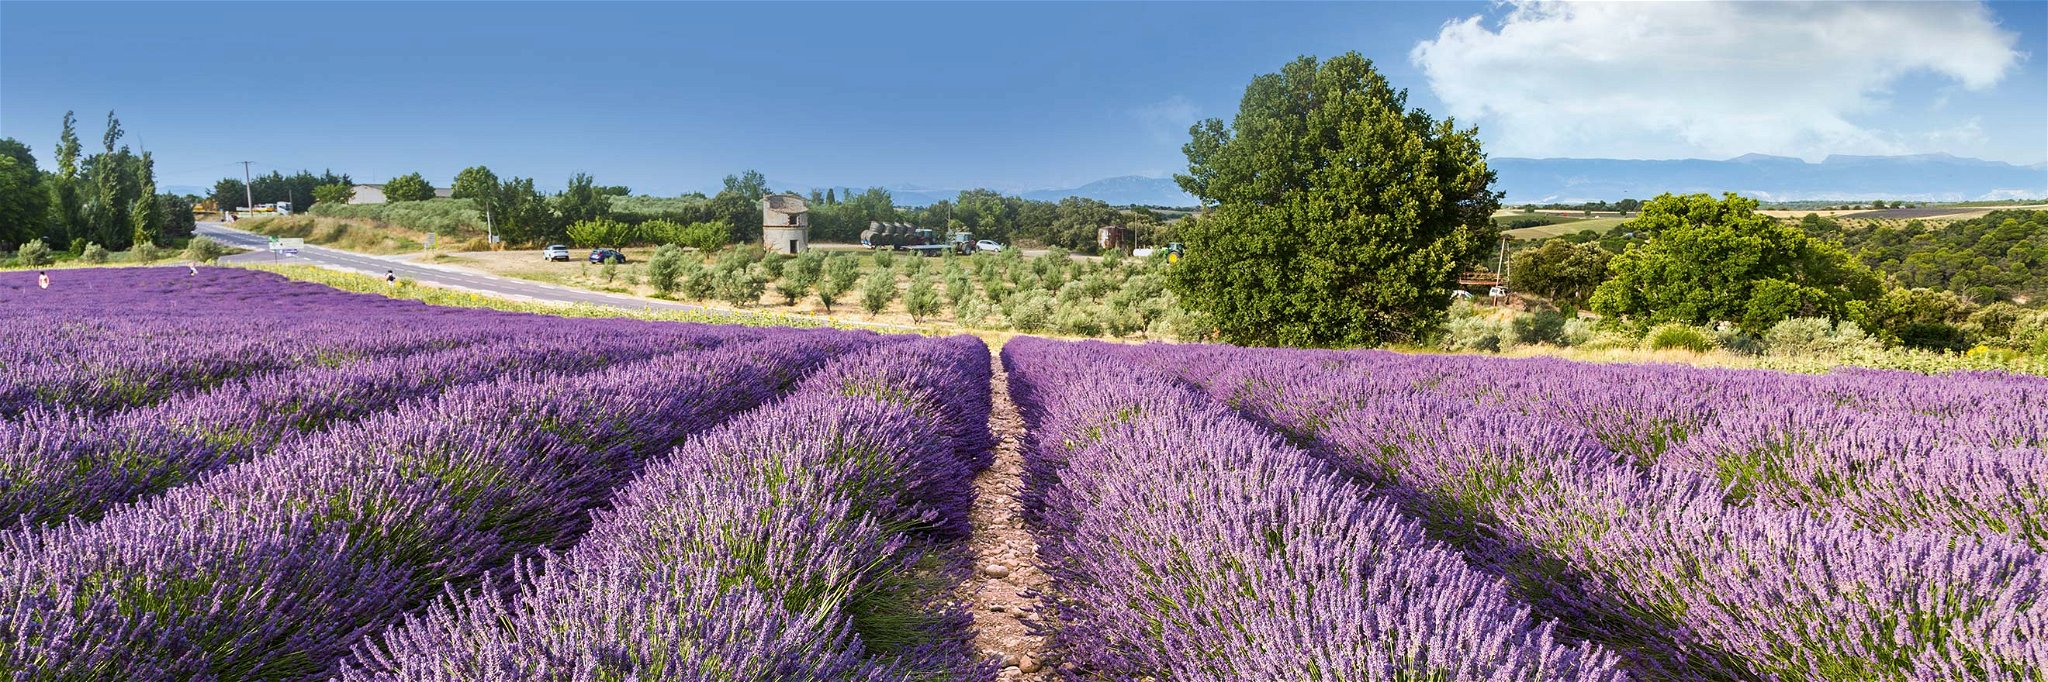 Strahlend violette Lavendel-Felder säumen den Weg durch die Provence.